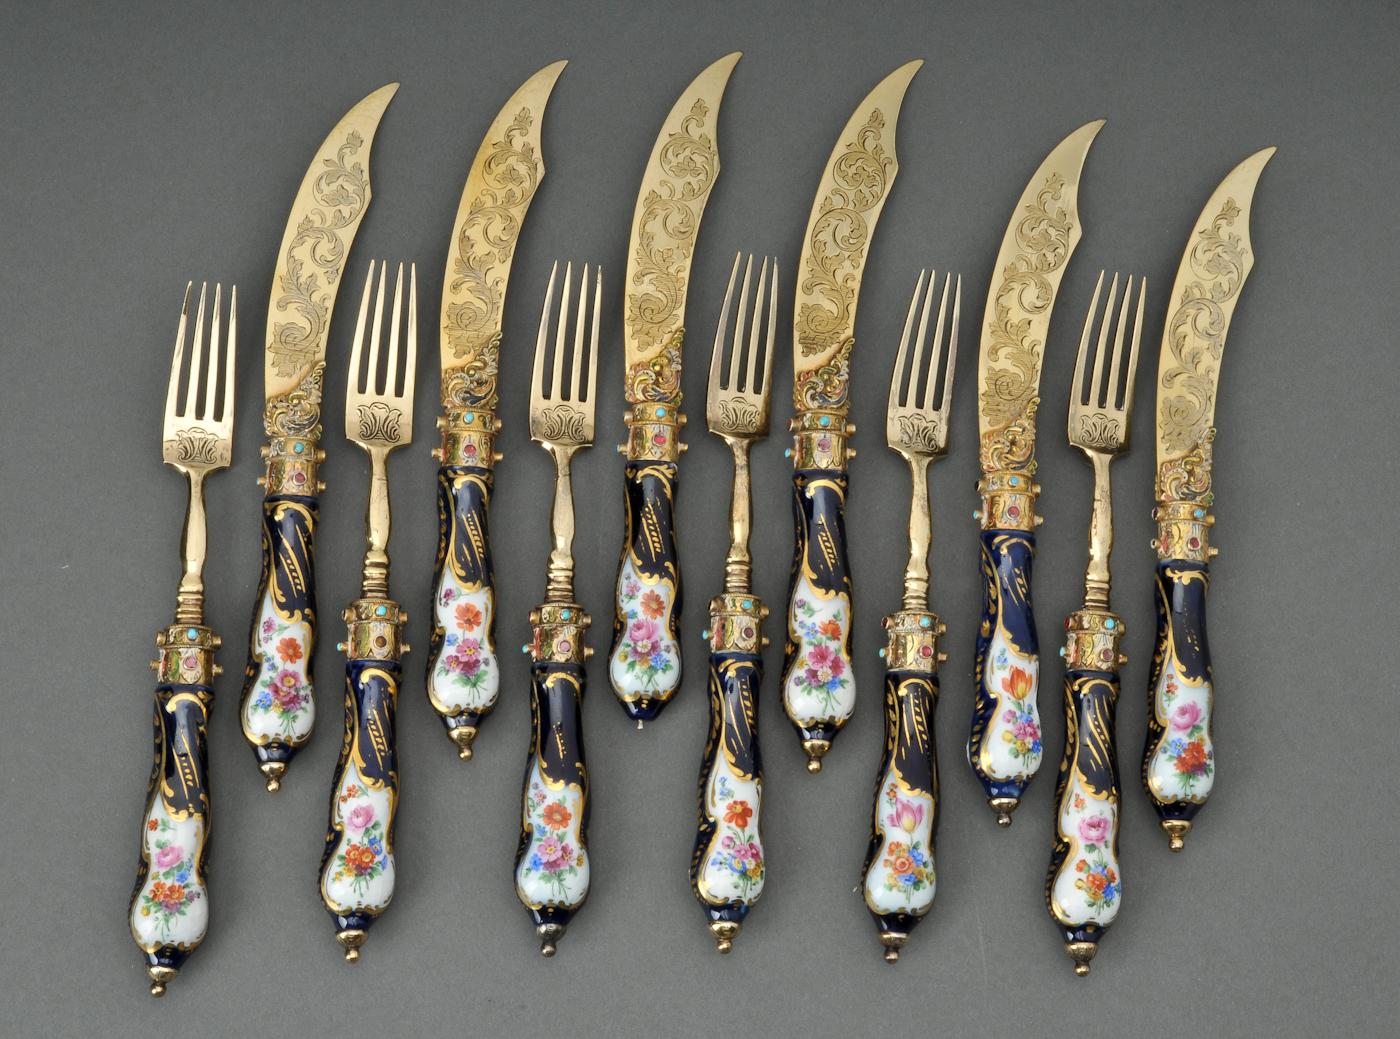 Antique Luxueux service de couverts en argent 18K orné de bijoux, de style Renaissance, comprenant six couteaux et six fourchettes dans un coffret contemporain. Cet ensemble est unique en son genre, fabriqué sur mesure dans l'Empire austro-hongrois,